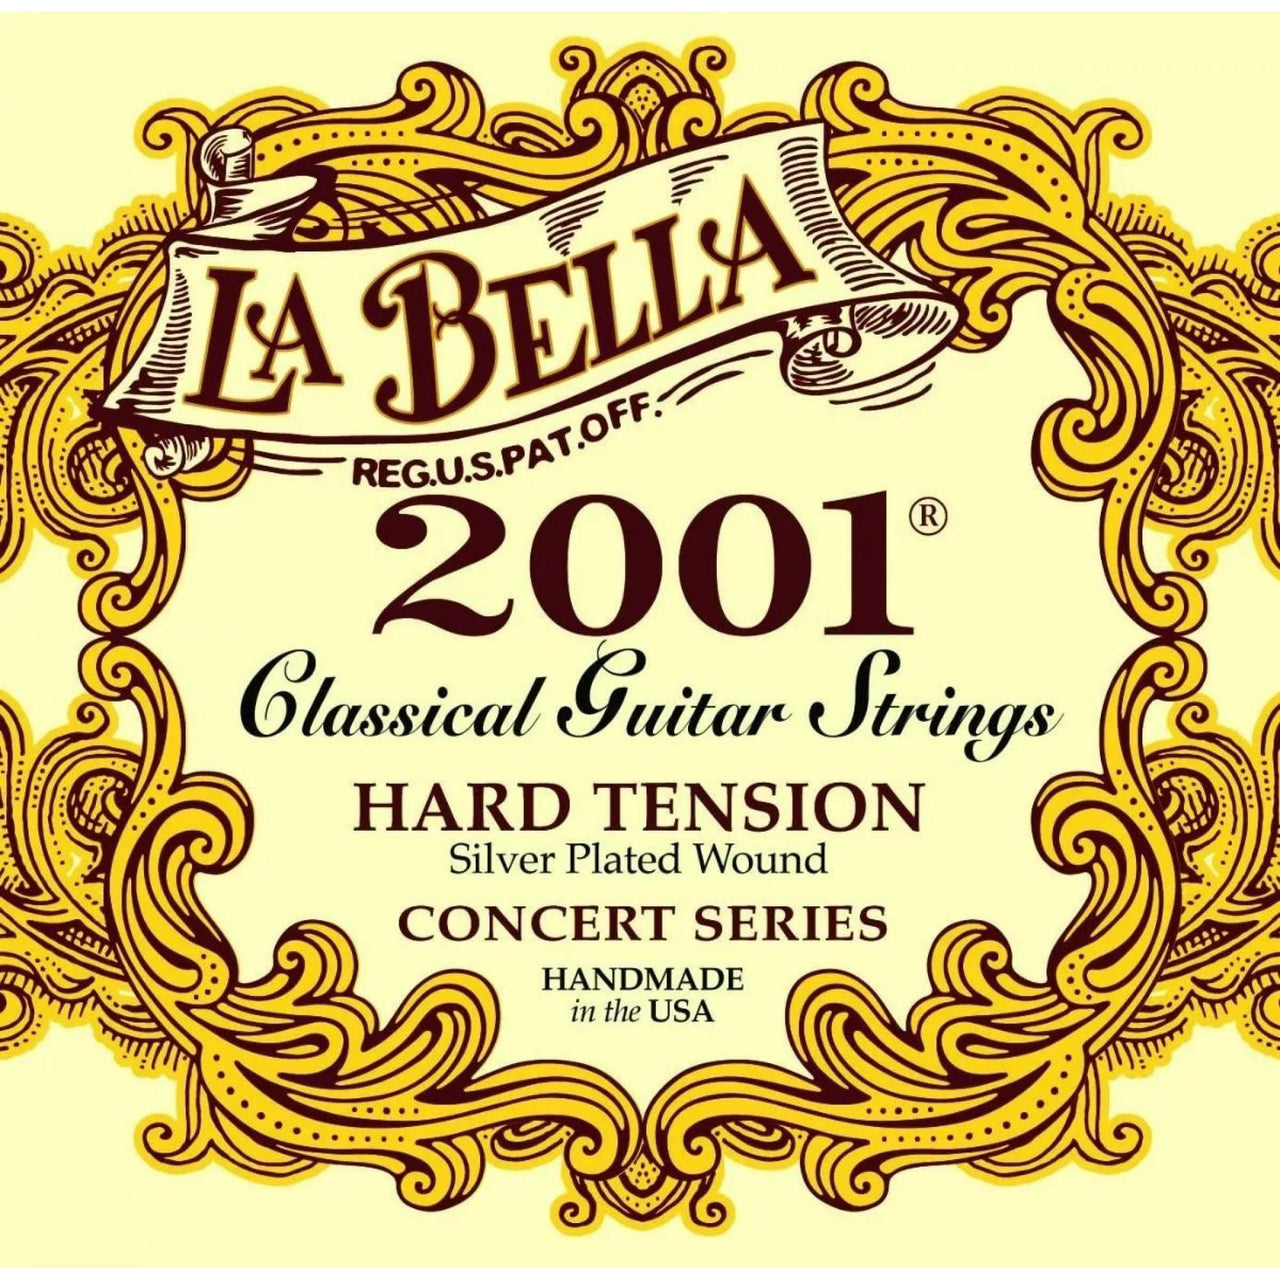 Encordadura La Bella Para Guitarra Tension Dura, 2001hard